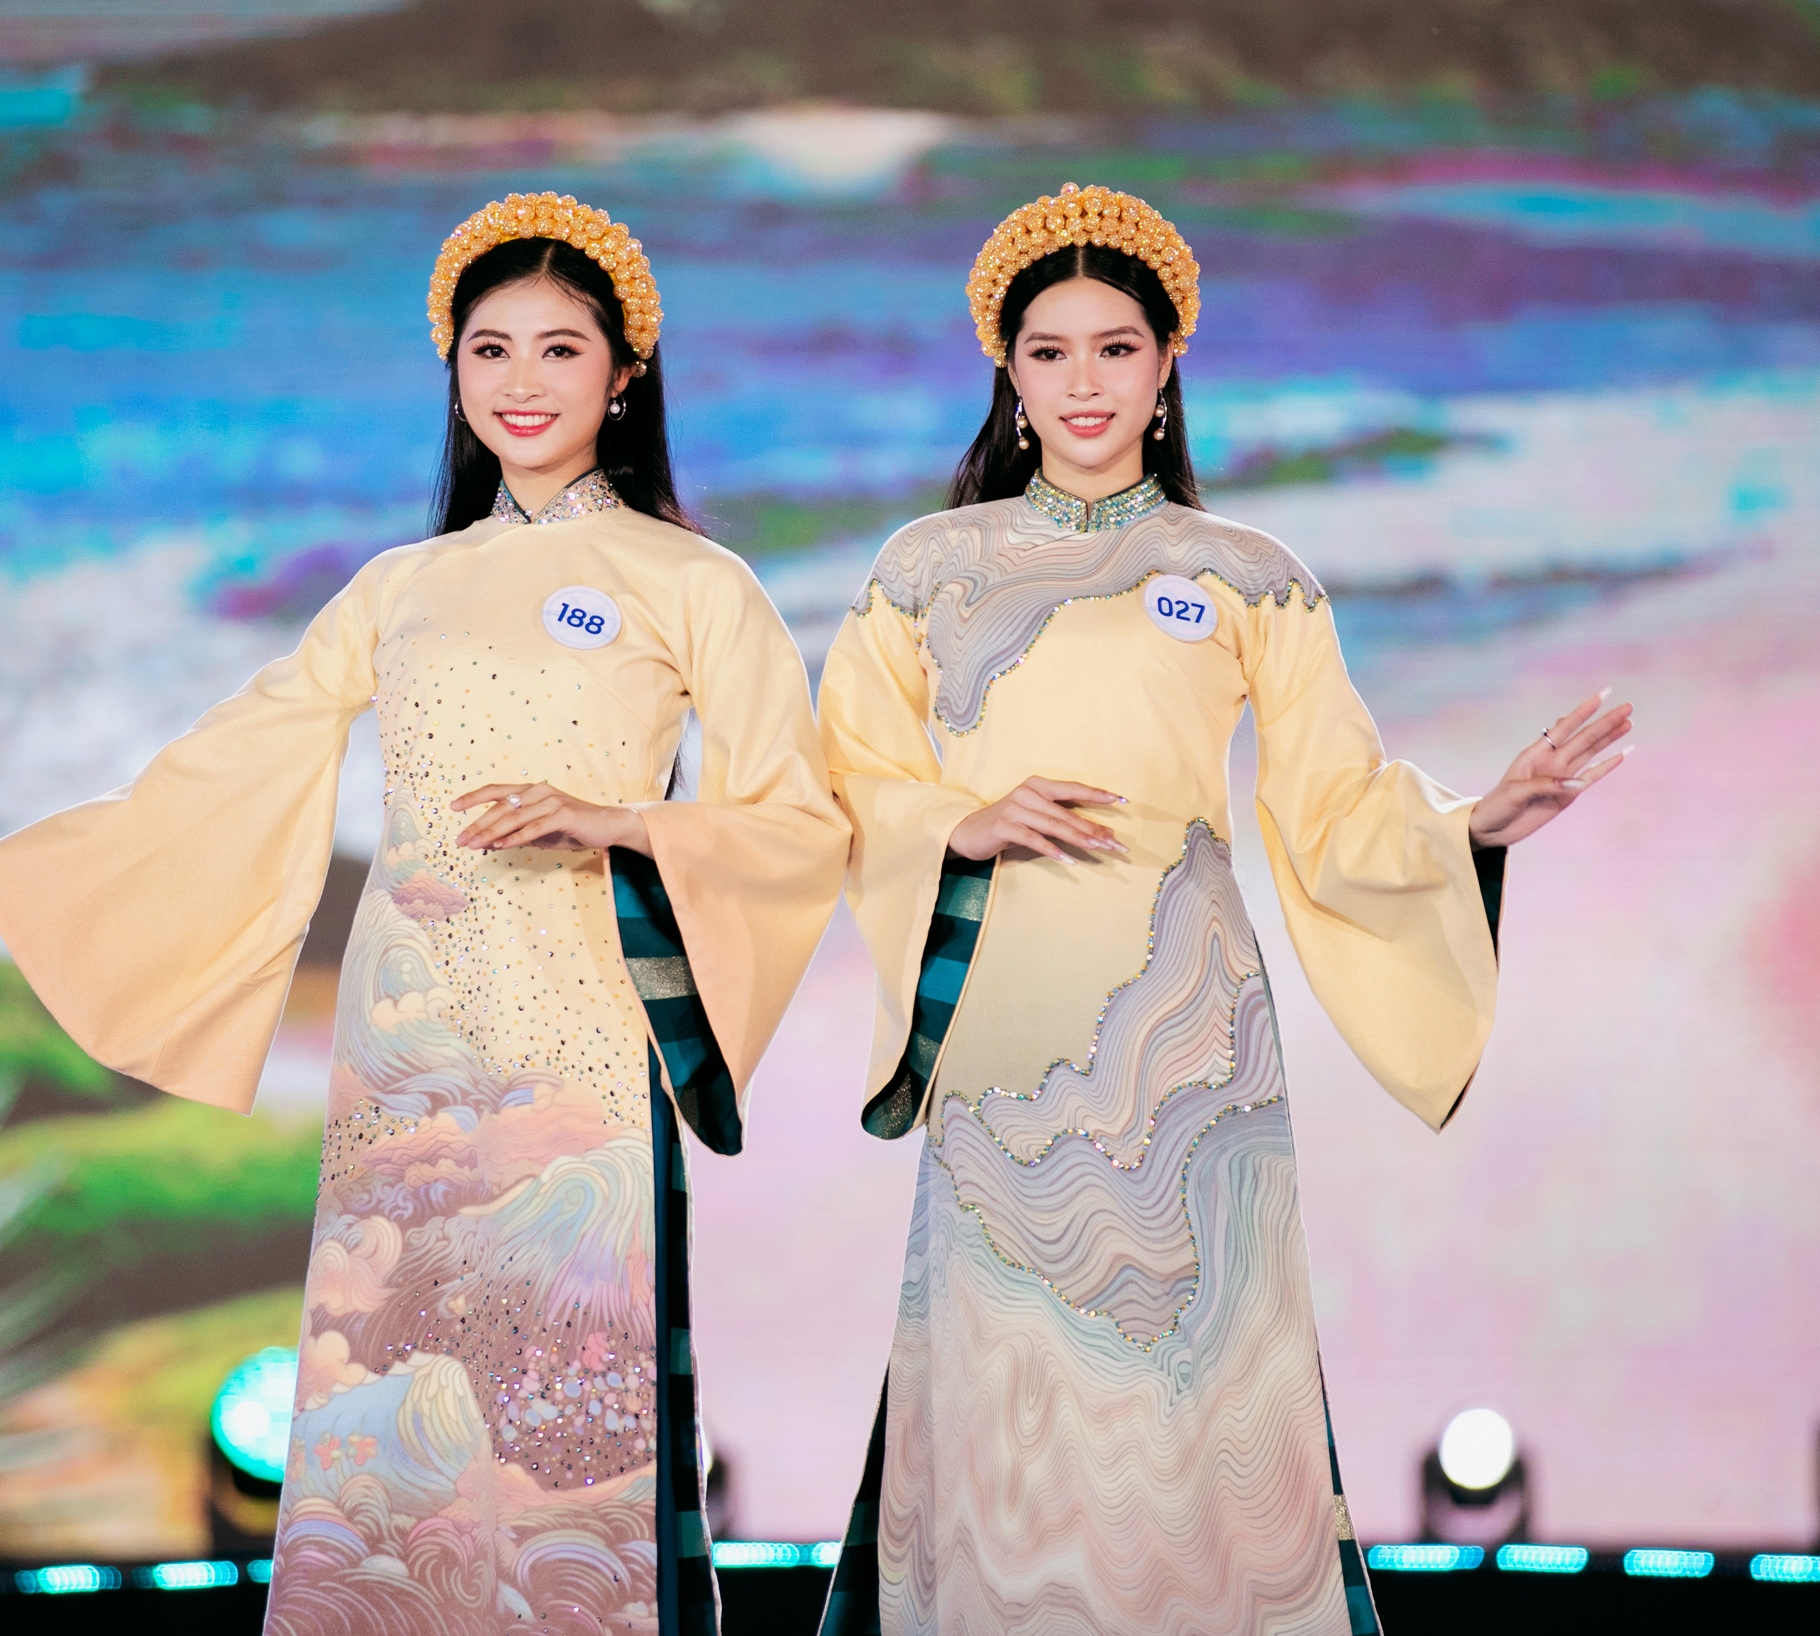 Lấy cảm hứng từ chính vẻ đẹp của biển Quy Nhơn, Nhà thiết kế Việt Hùng mang tới bộ sưu tập áo dài mới nhất của anh với những màu sắc ấn tượng, tạo cá tính riêng cho người mặc.  